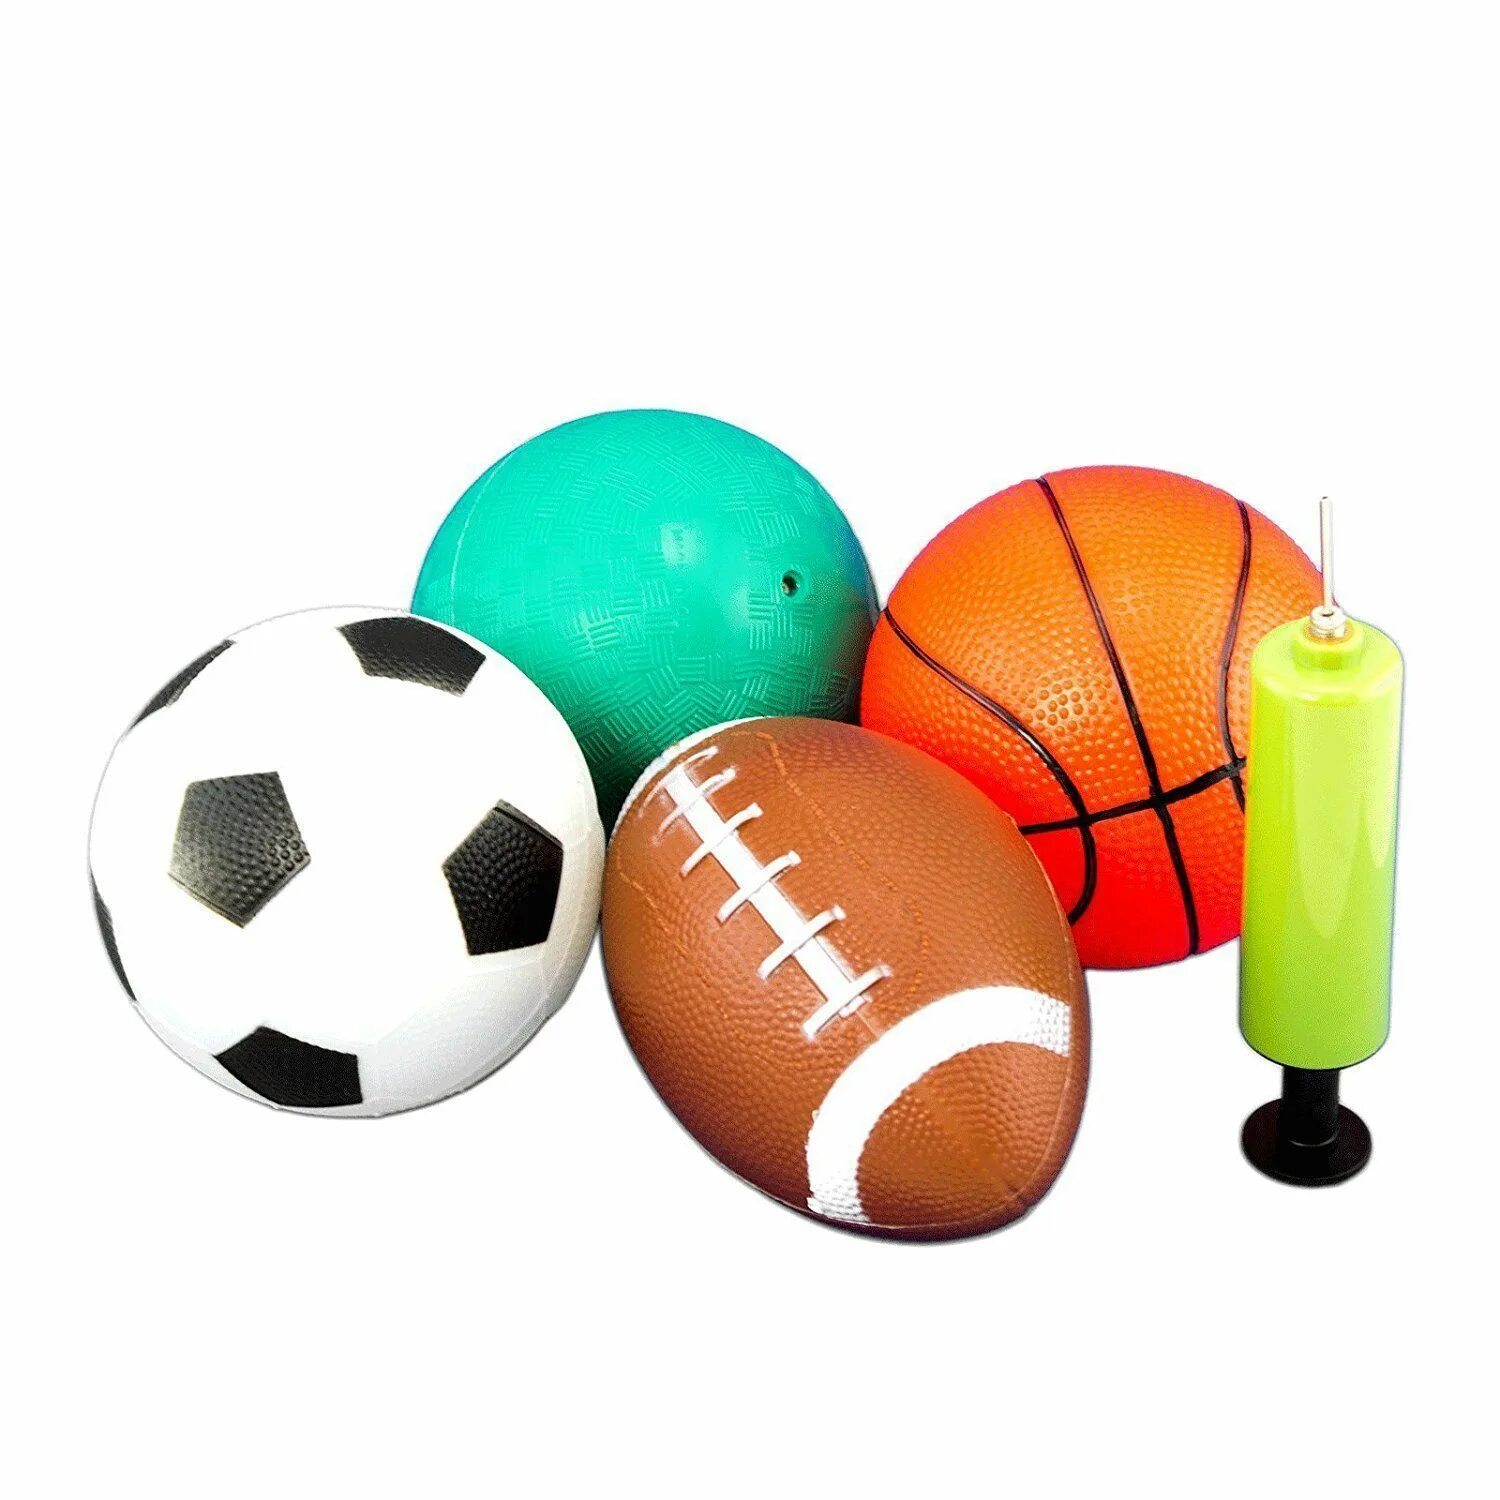 Мяч спортивный маленький. Boll-бол-мяч. Спортивный инвентарь. Спортивный инвентарь для детей. Набор мячей для спортивных игр.